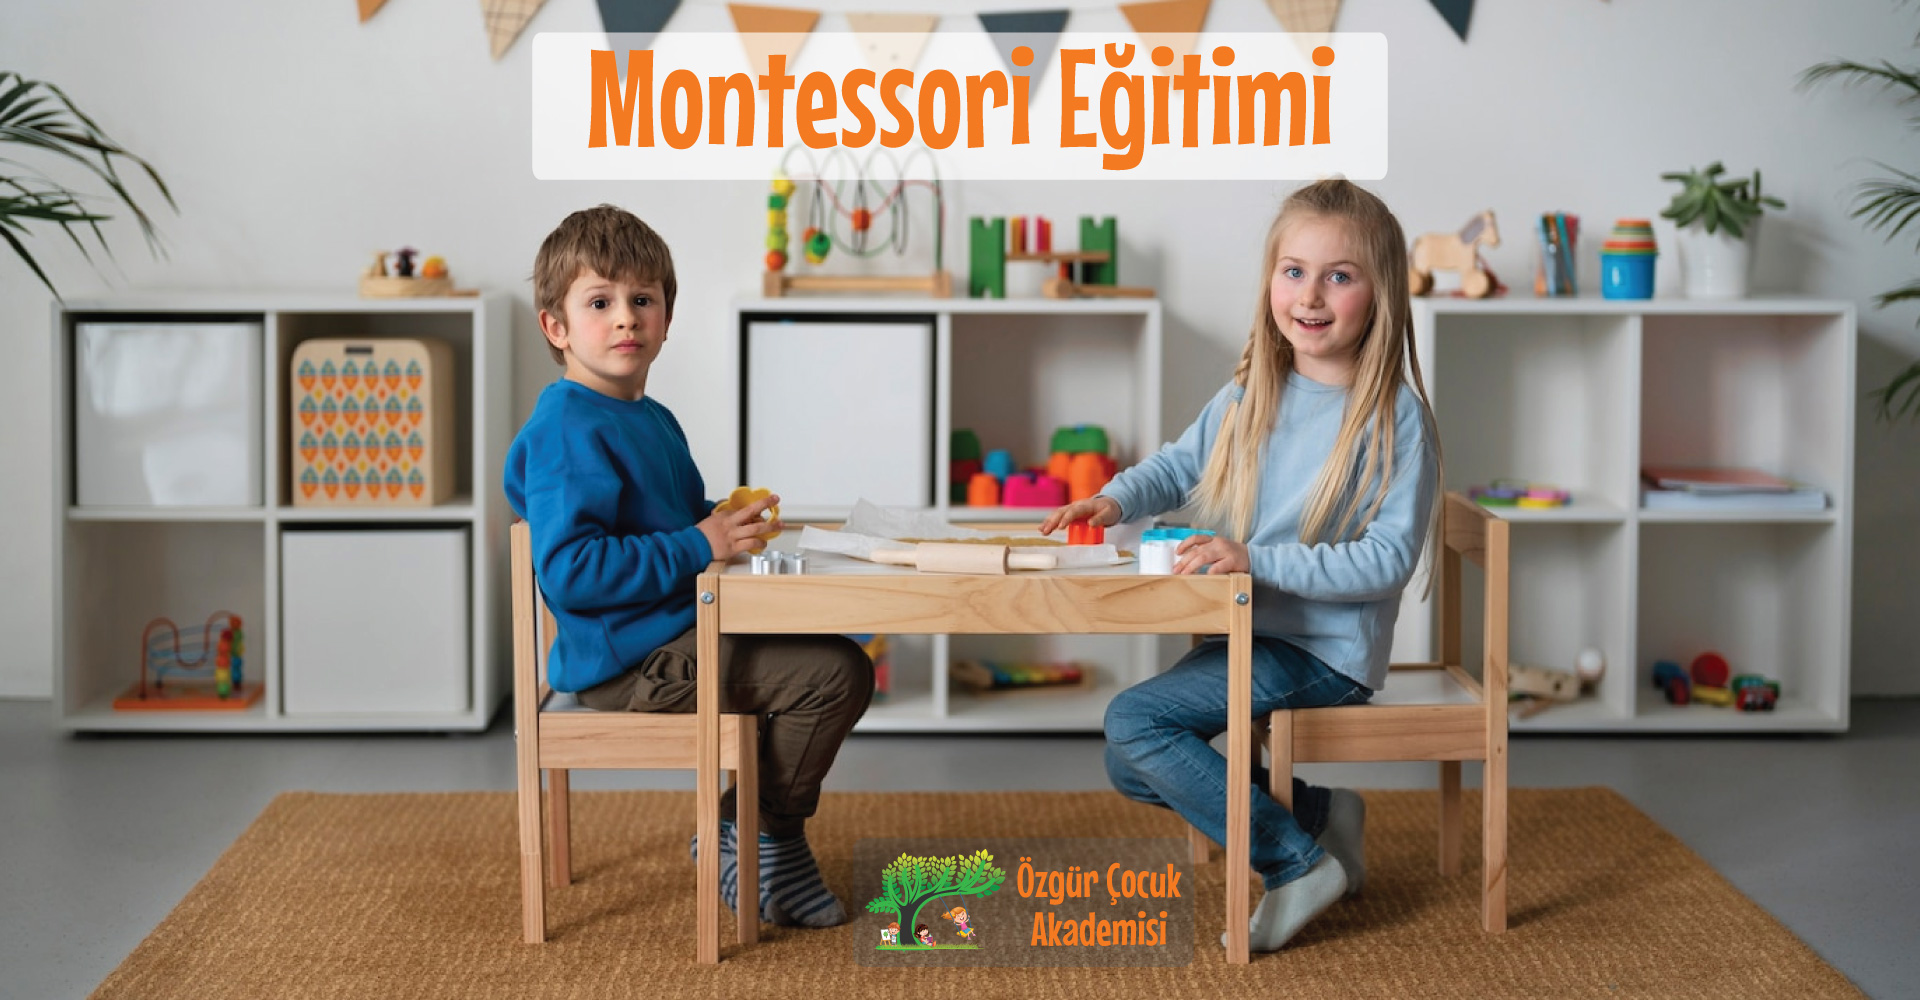 Özgür Çocuk Akademisi Montessori eğitimi